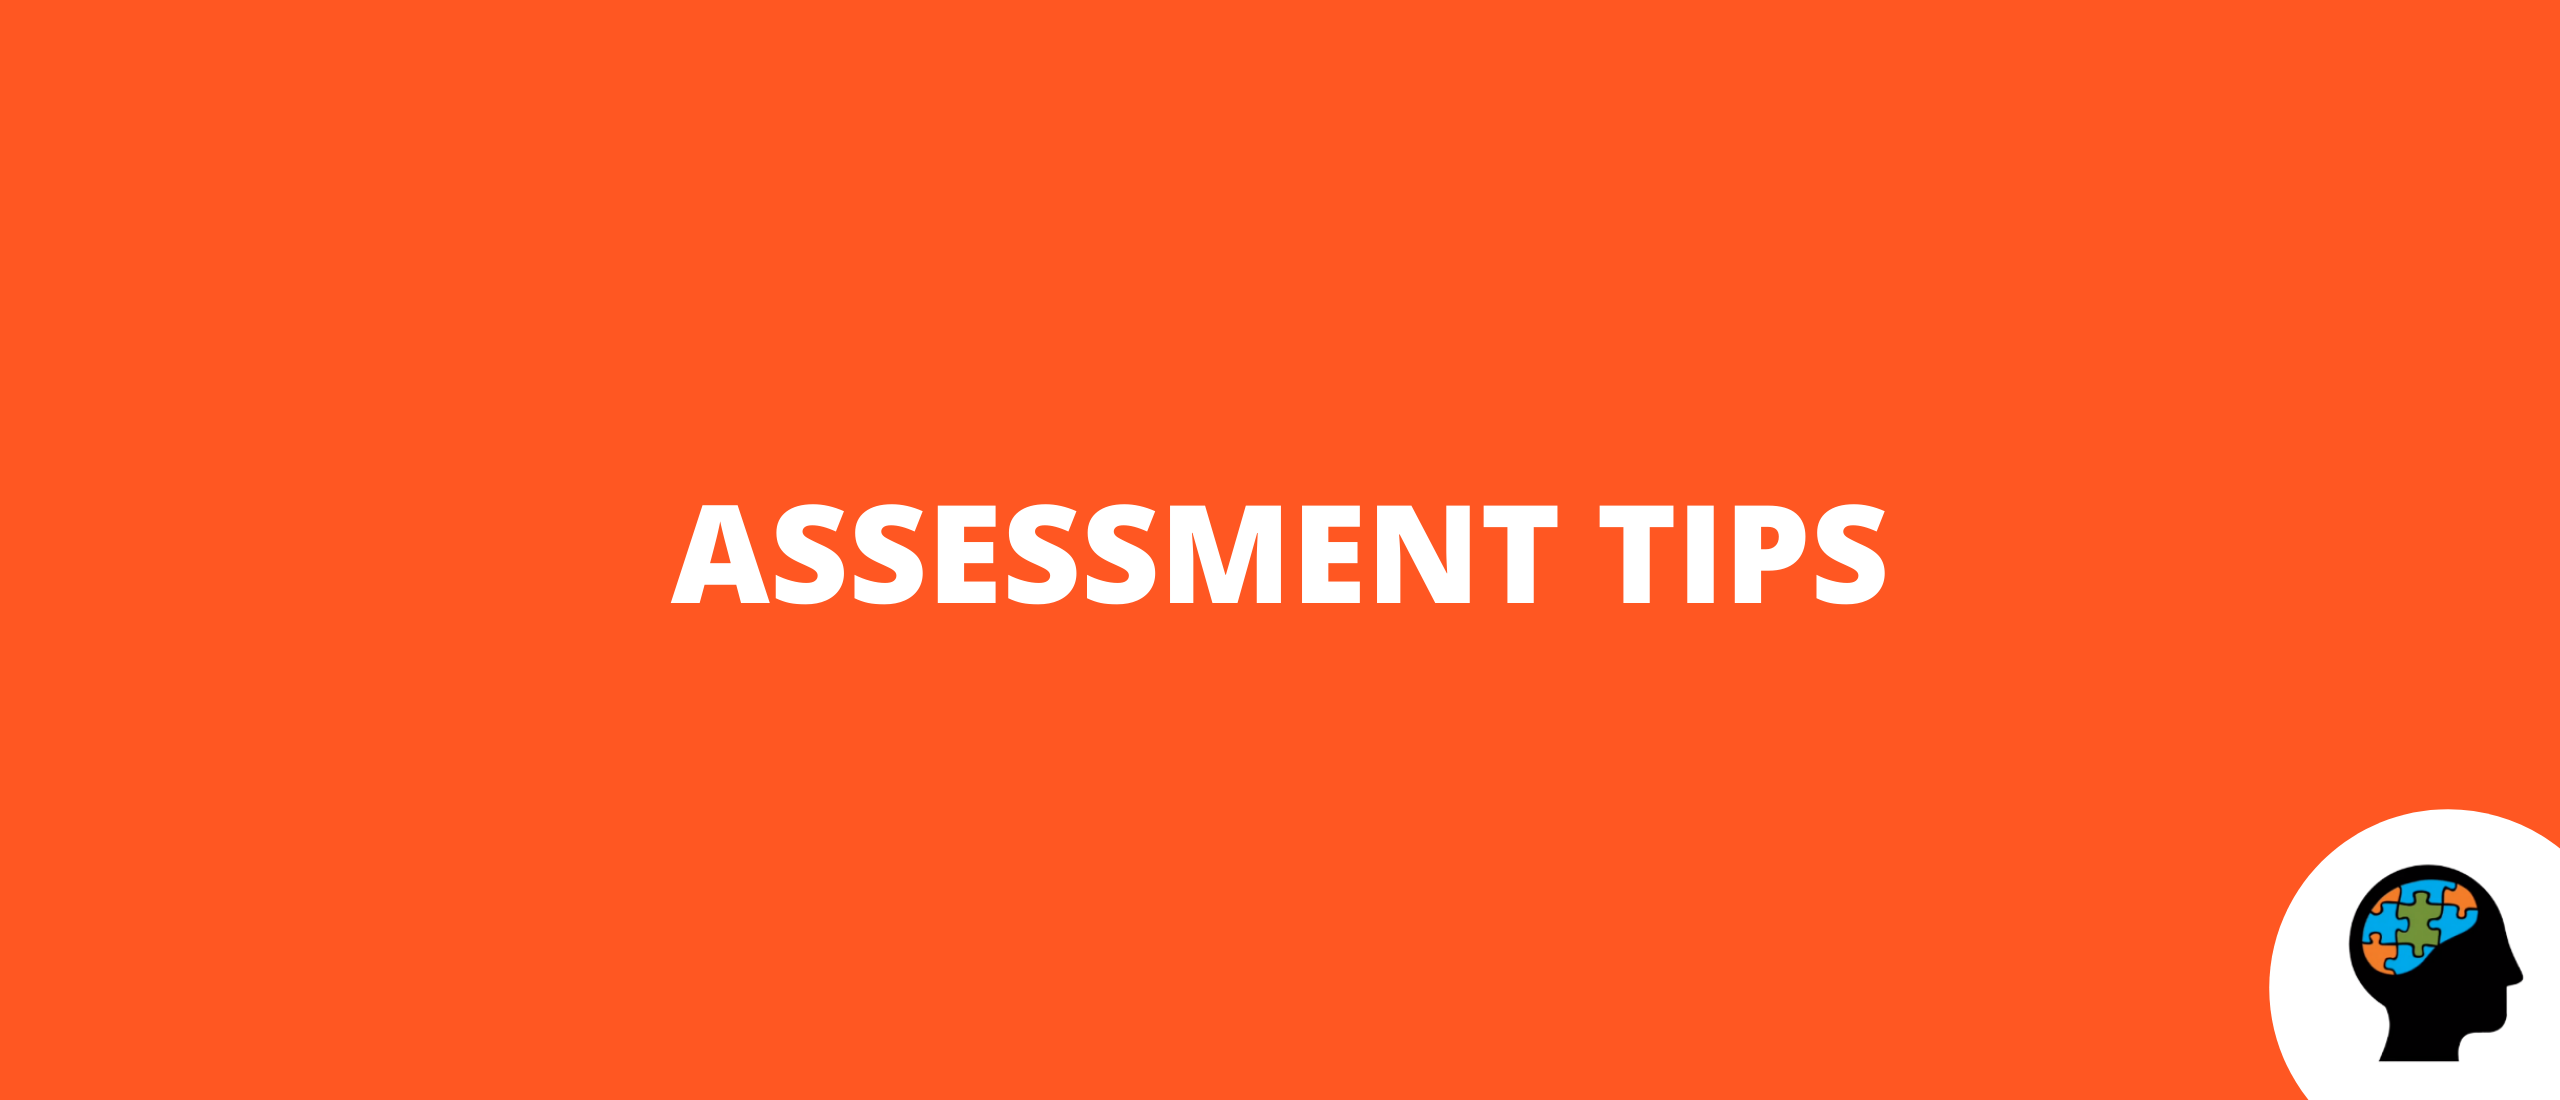 Assessment tips